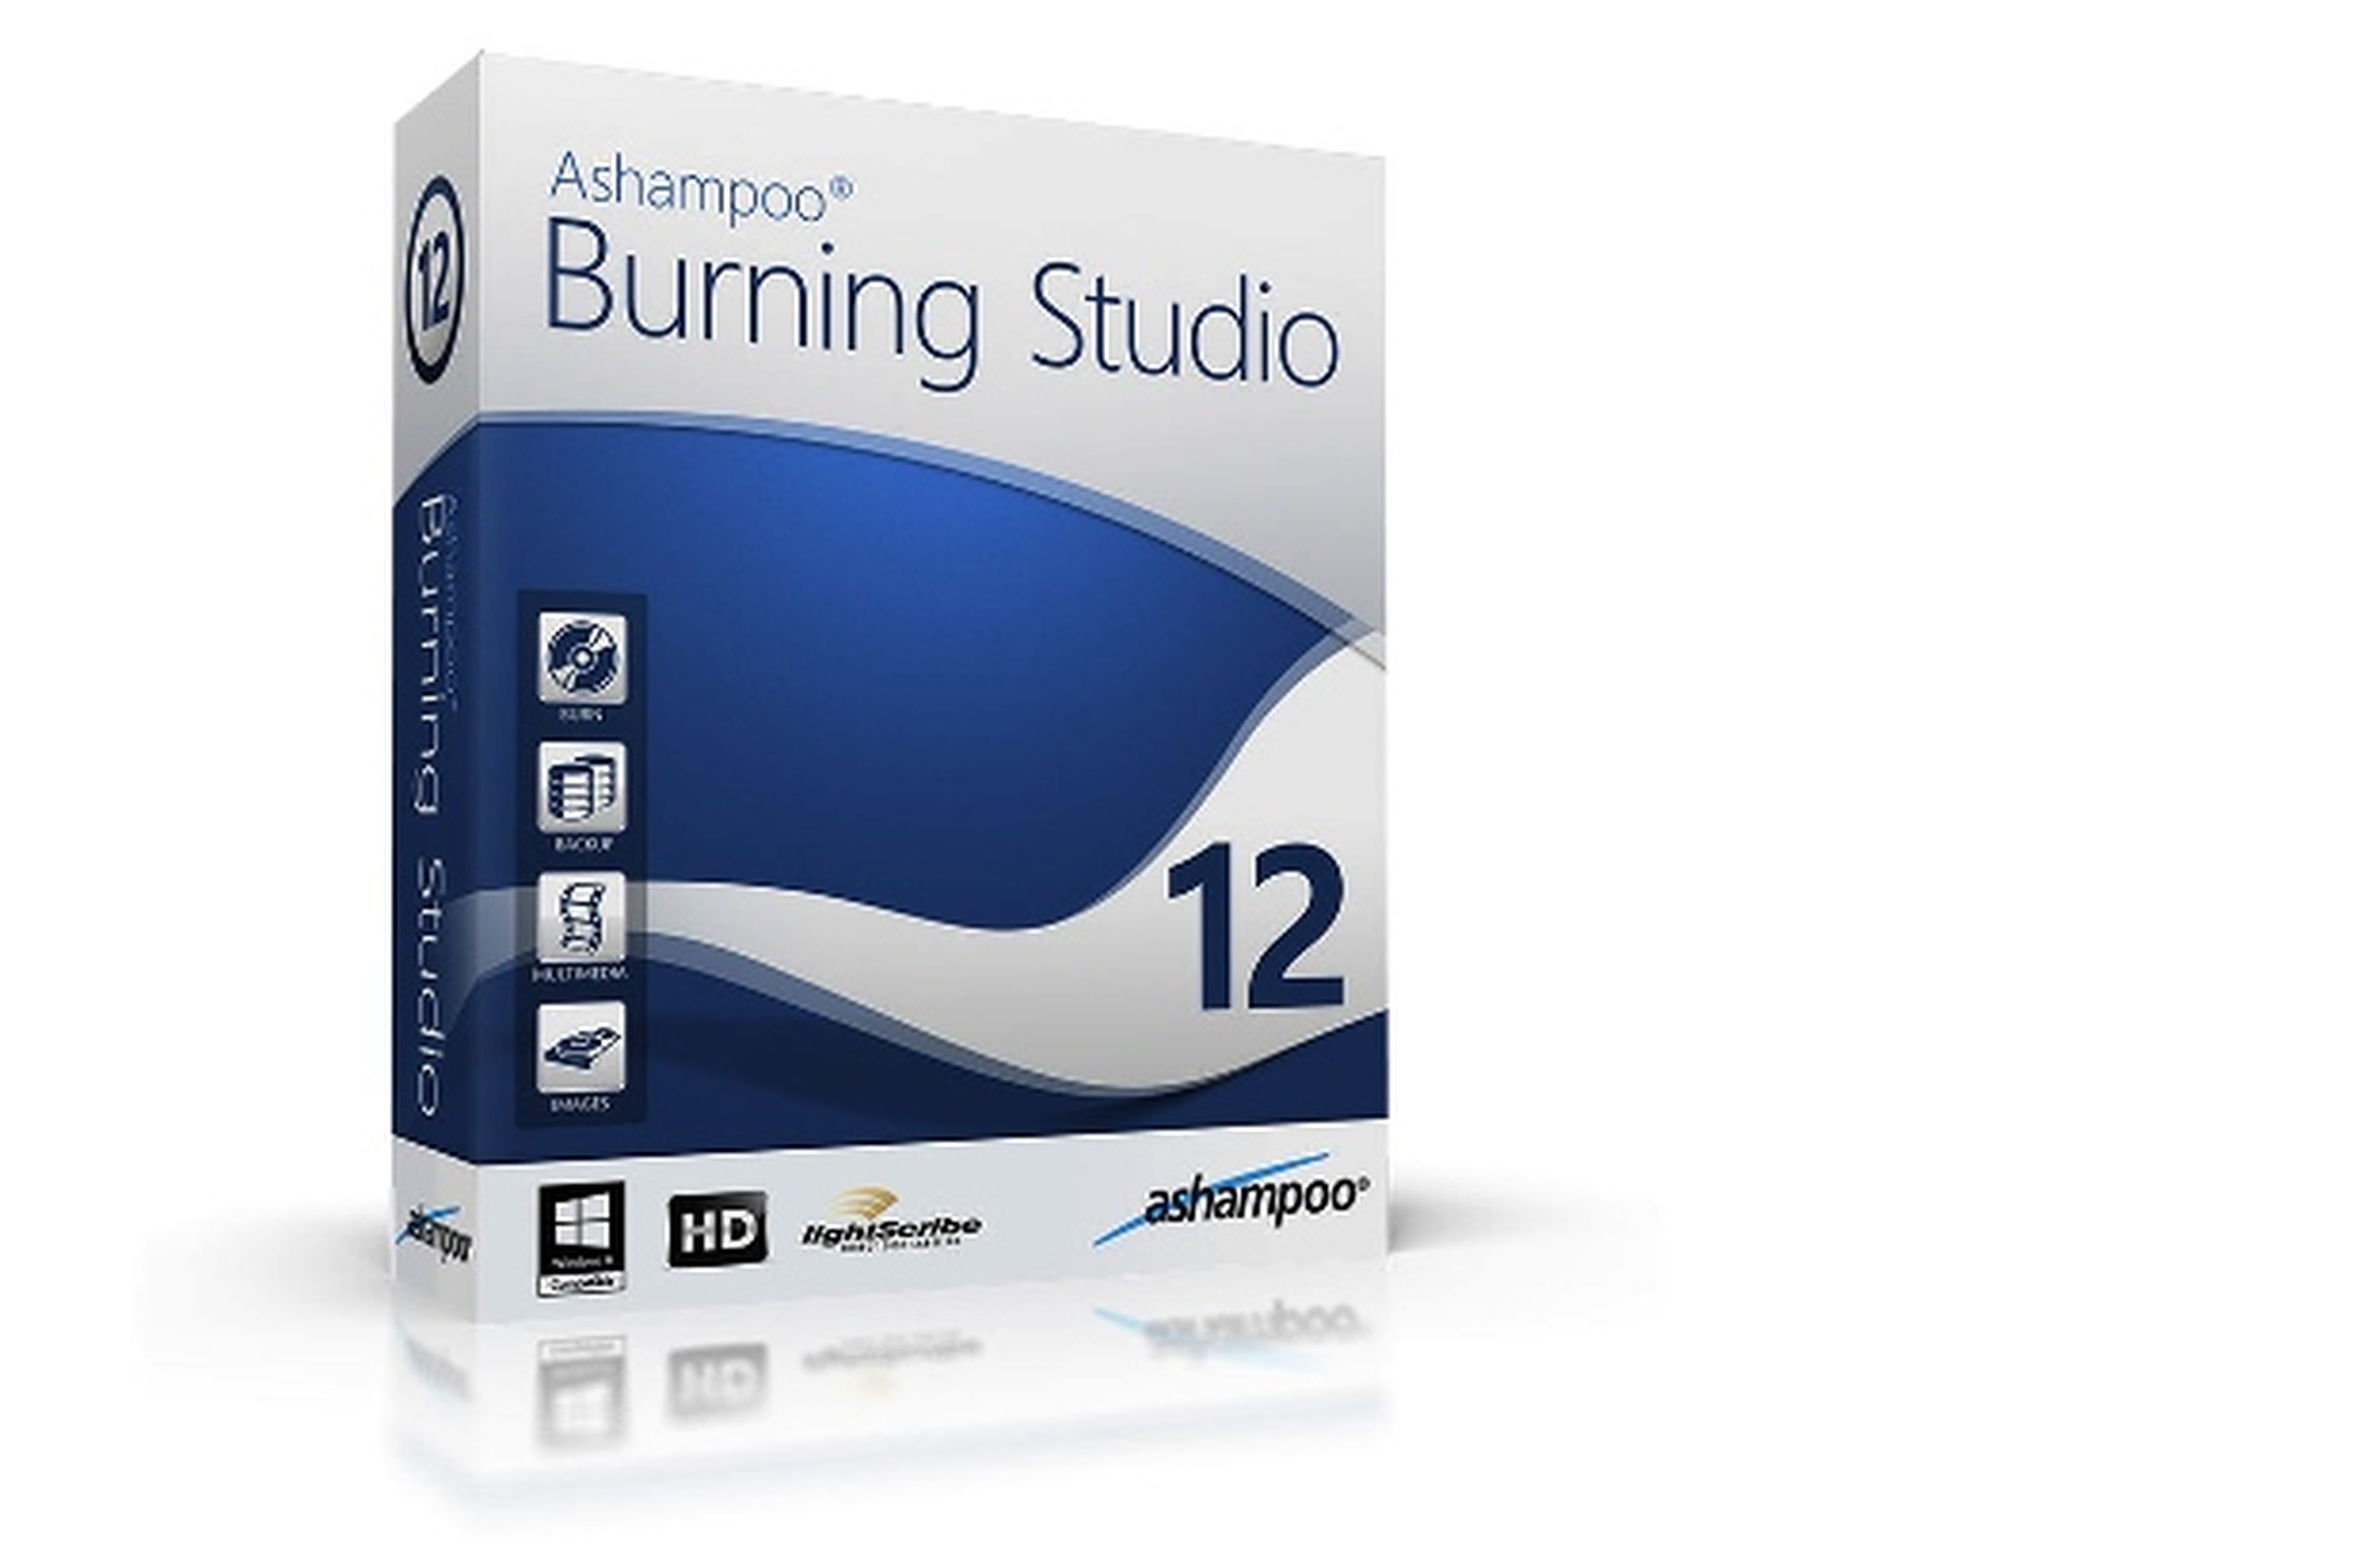 Ashampoo Burning Studio 12